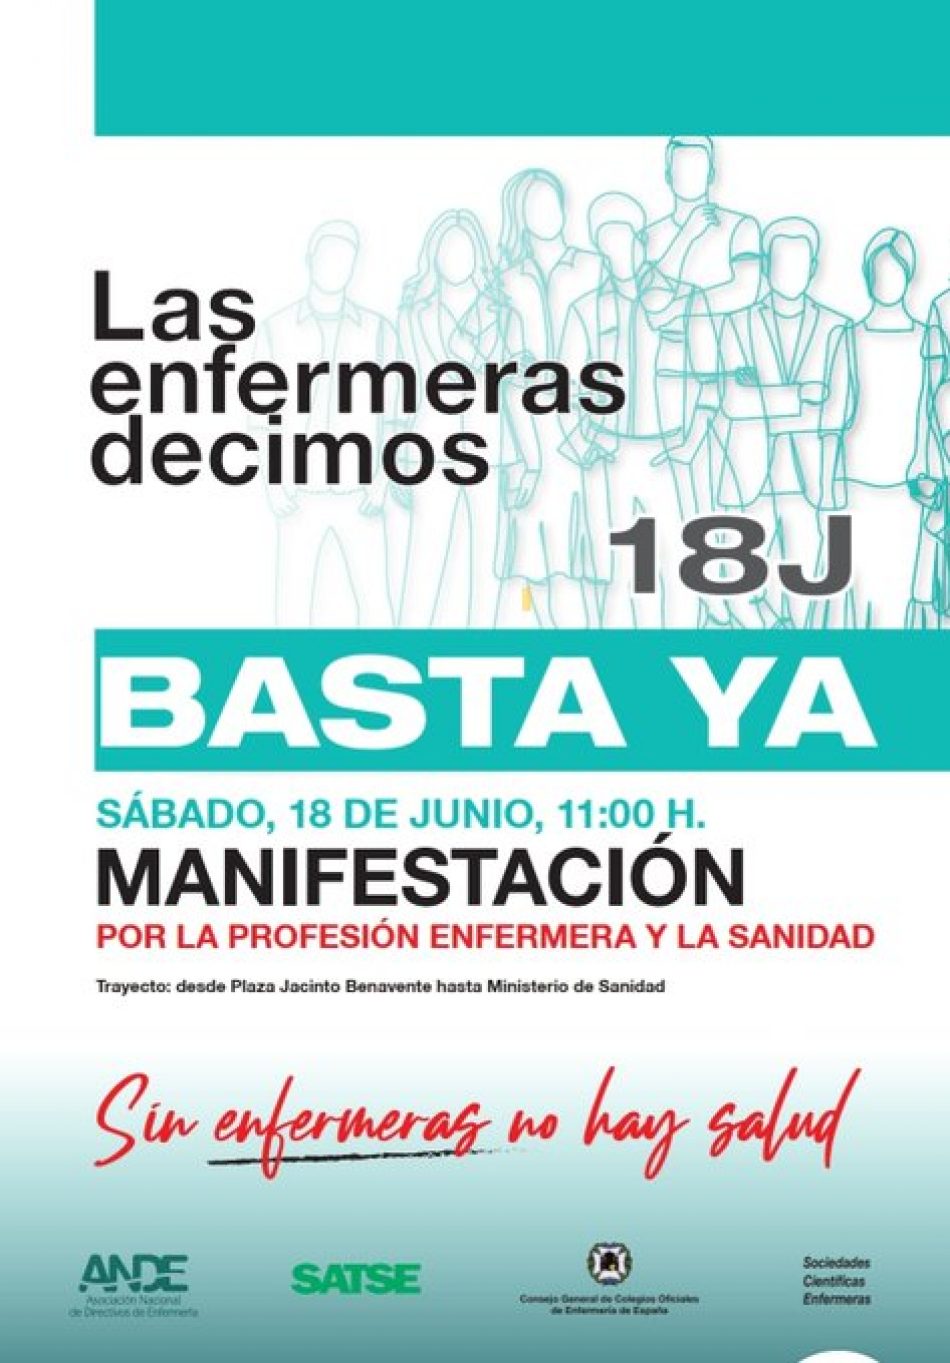 Unidad Enfermera ultima los detalles de la manifestación multitudinaria el 18 de junio en Madrid